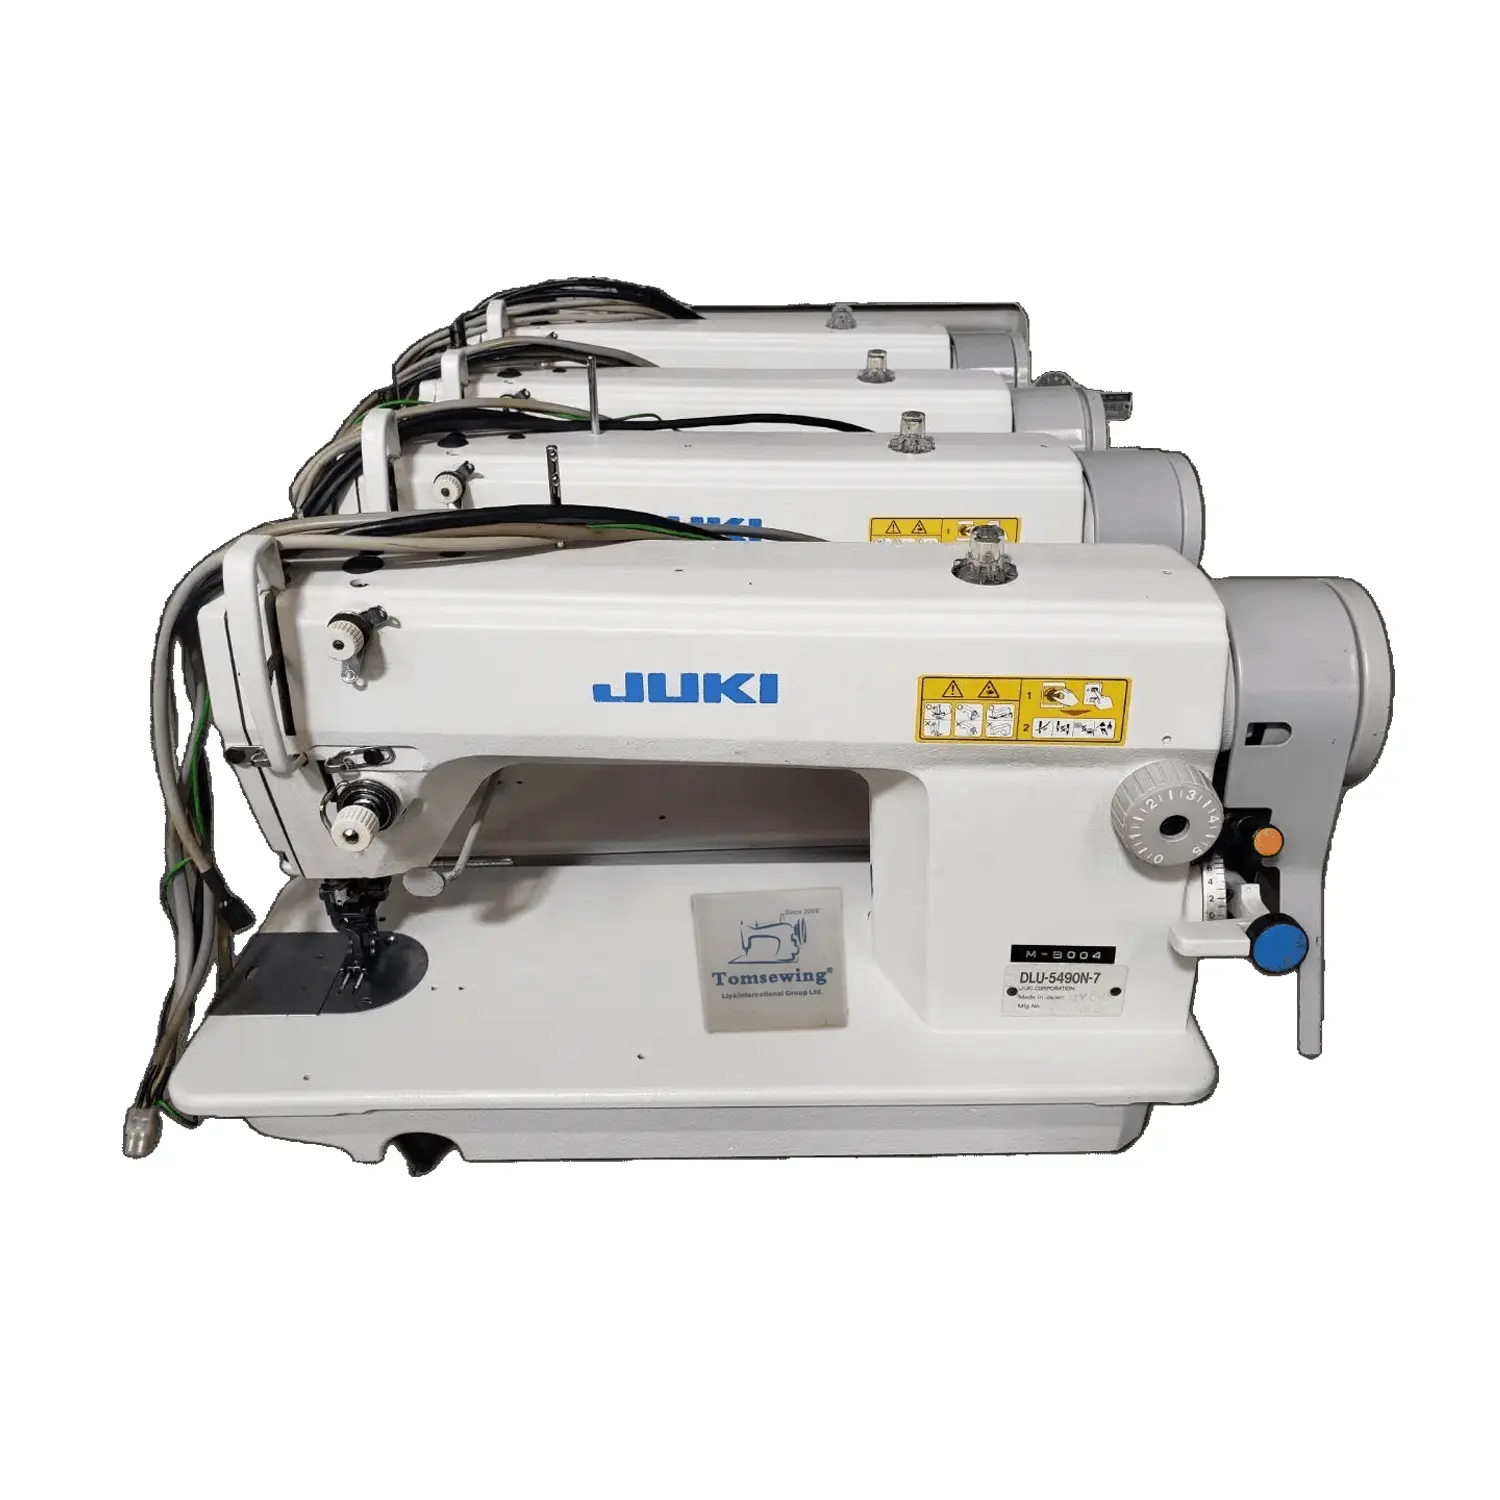 Giappone usato JUKI-DLN 5490N-7 macchine da cucire industriali per mangimi ad aghi tagliafilo automatico di seconda mano Maquina de coser usada